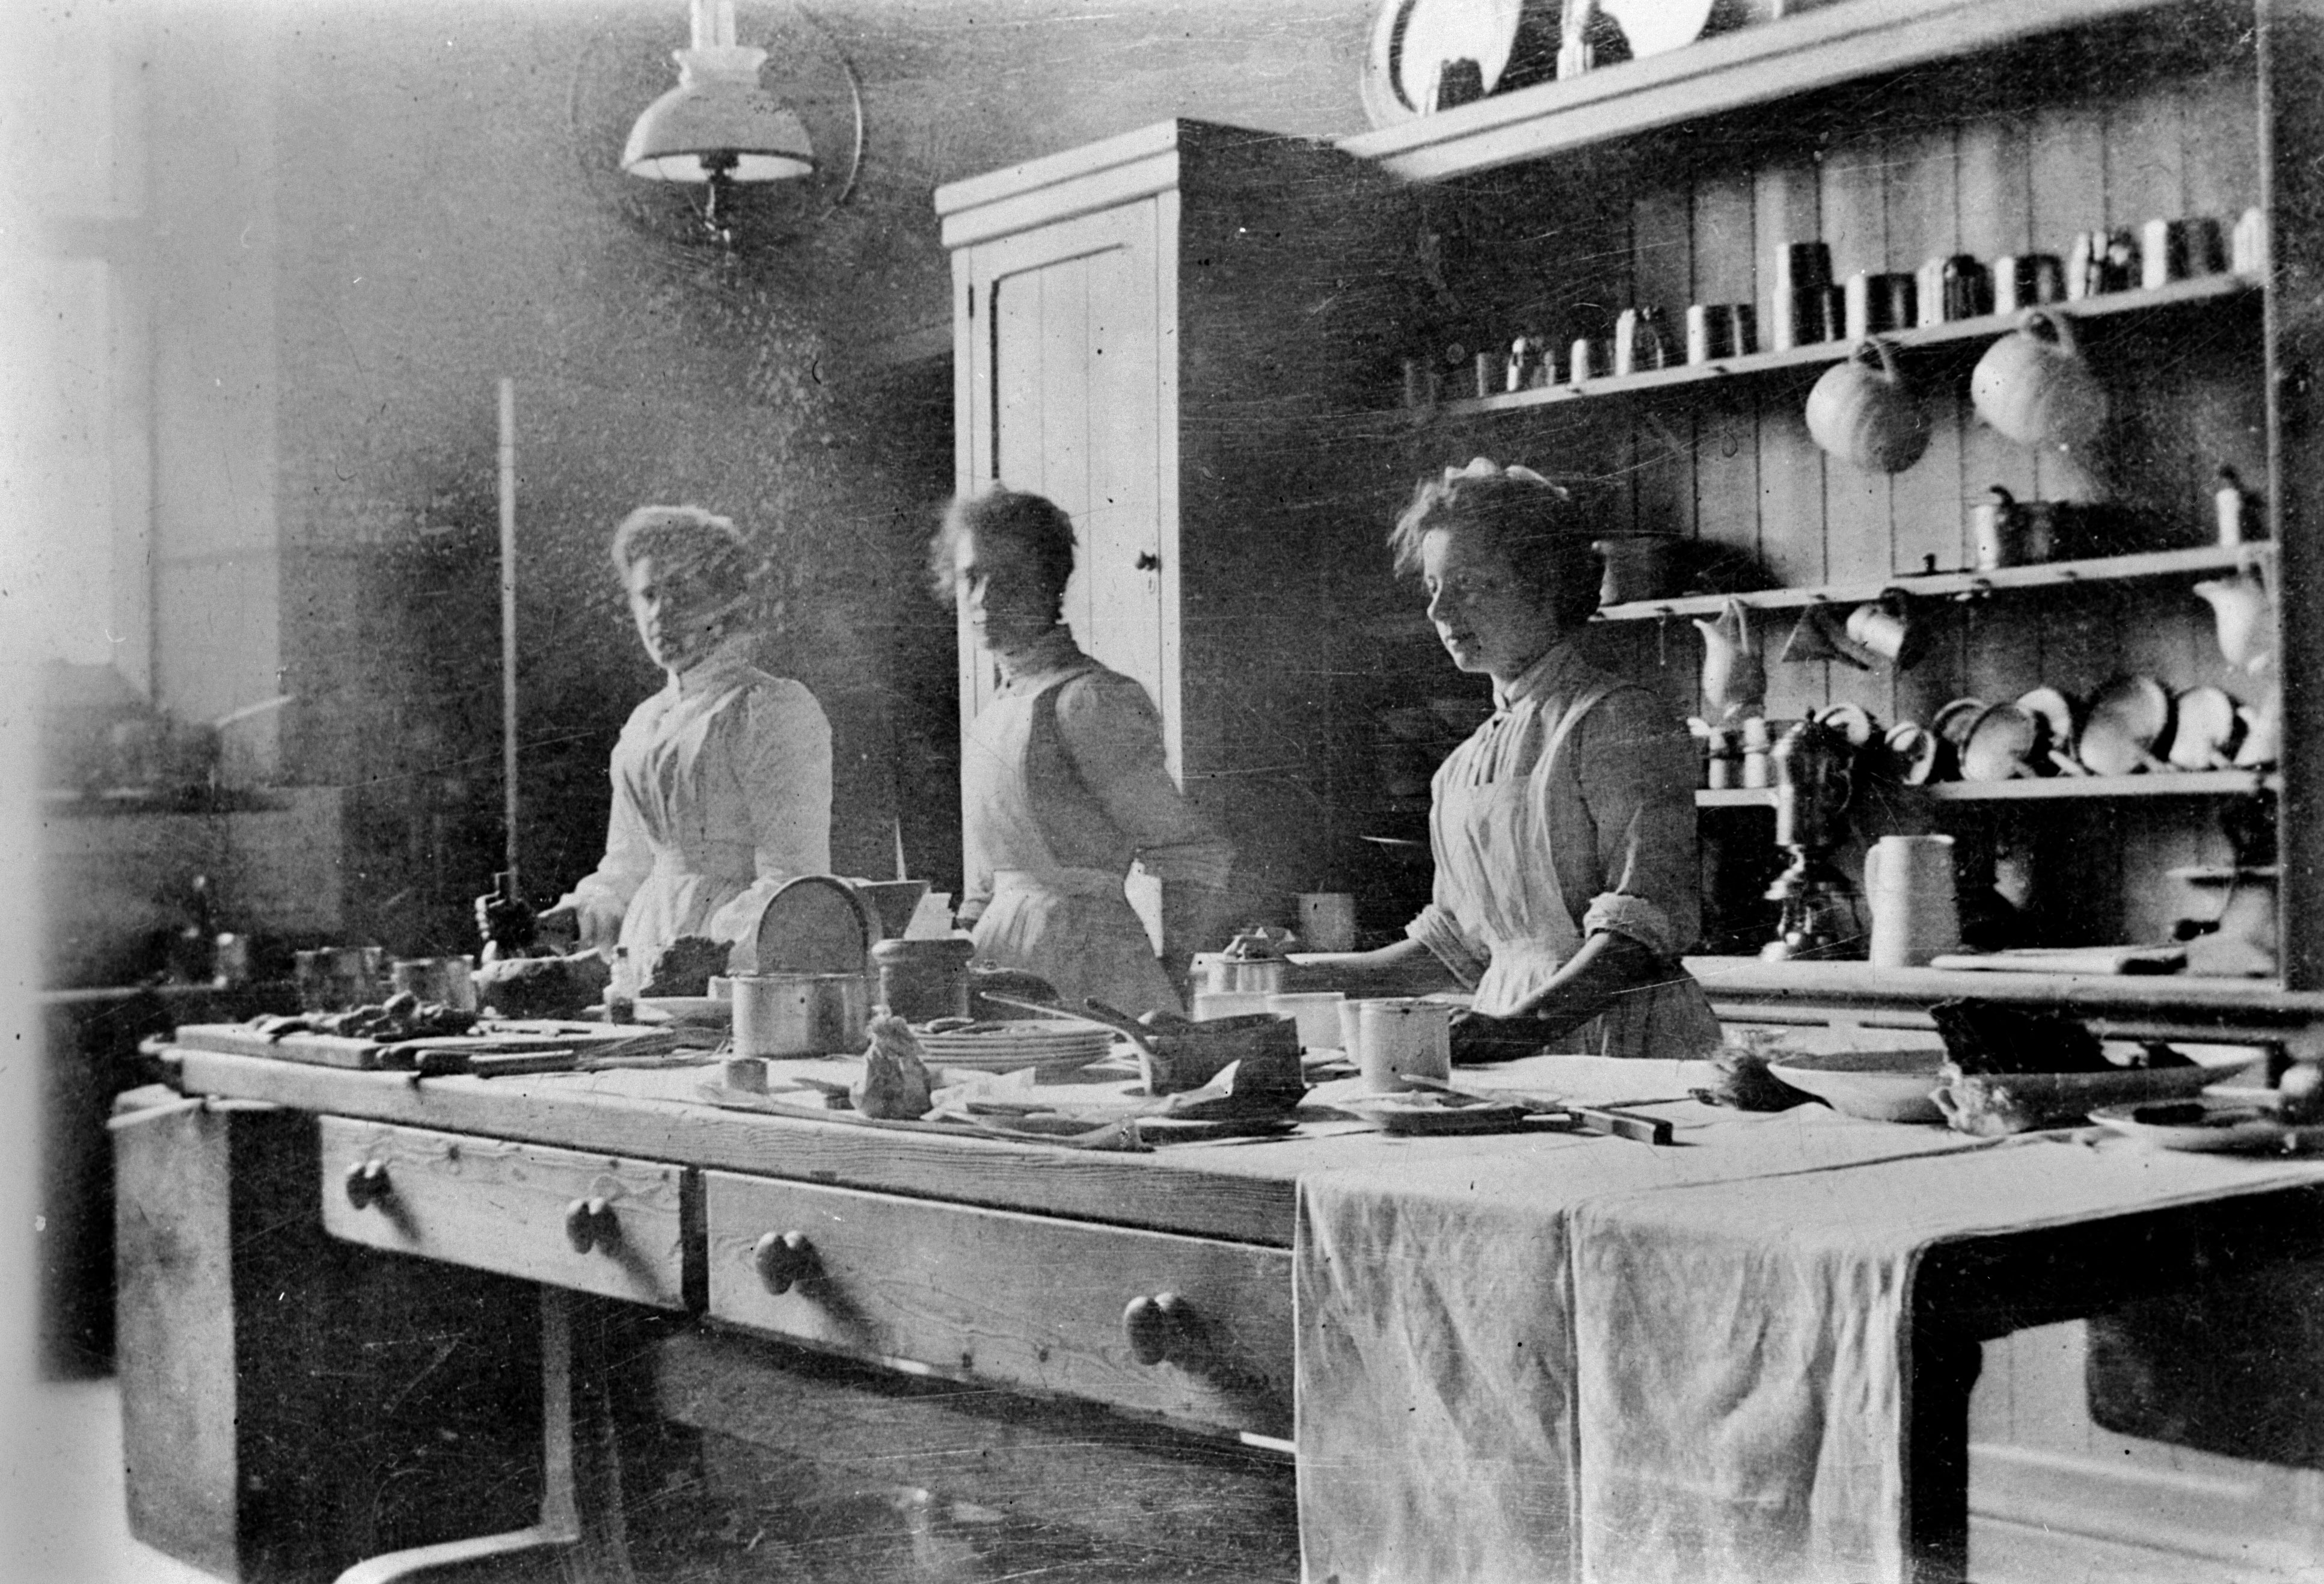 Original Victorian Kitchen, 1905